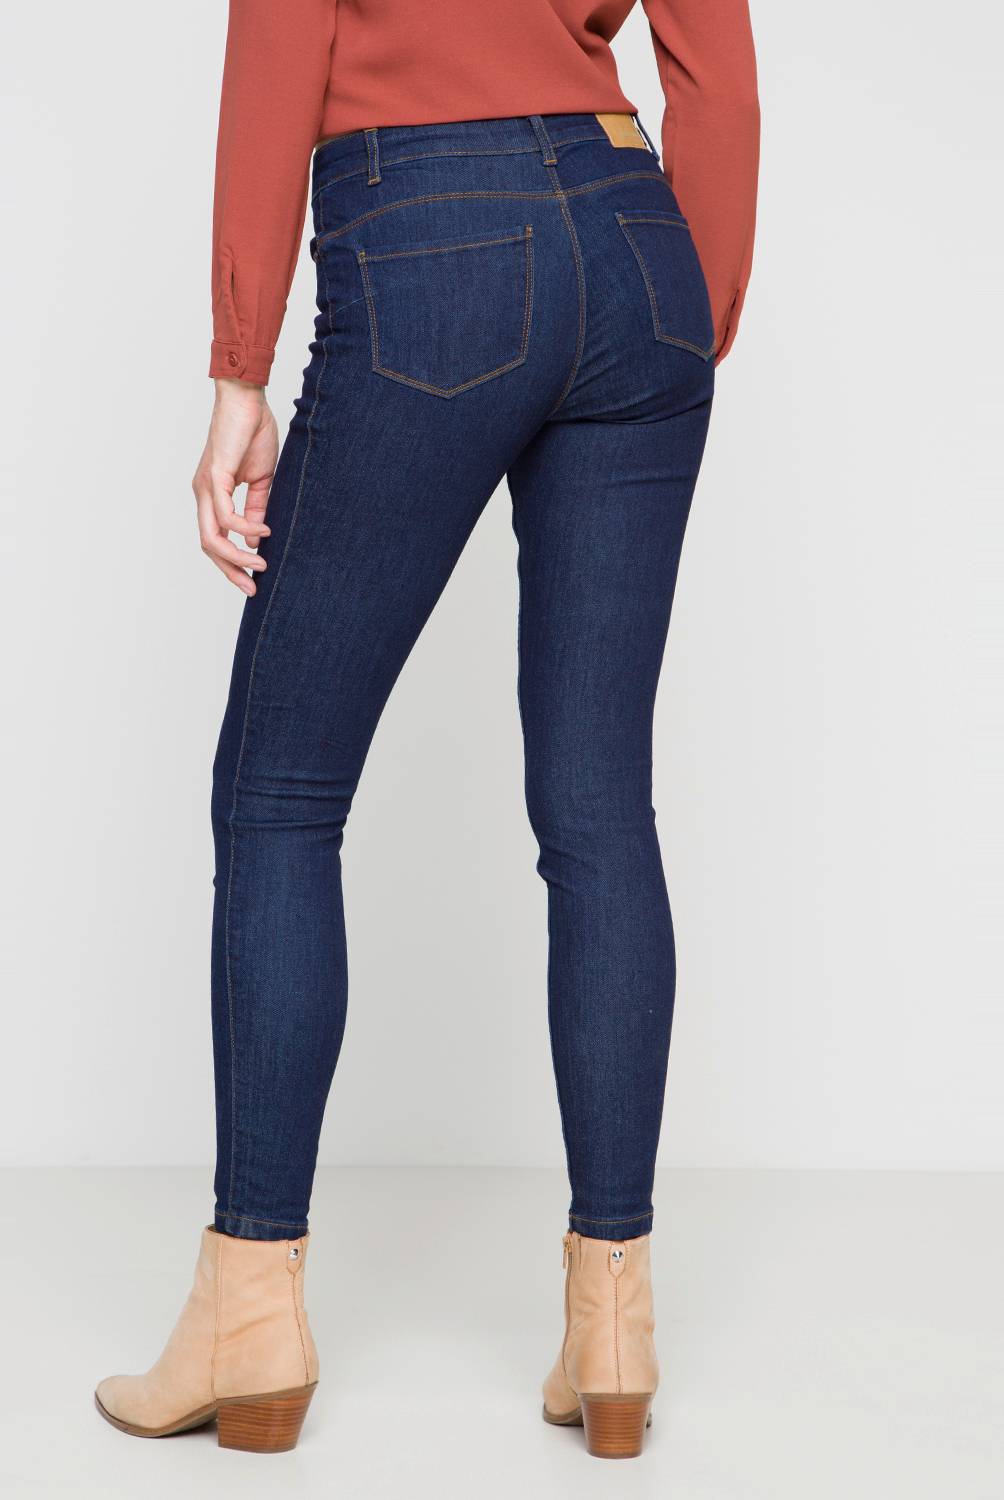 VERO MODA - Vero Moda Jeans Skinny Algodón Mujer